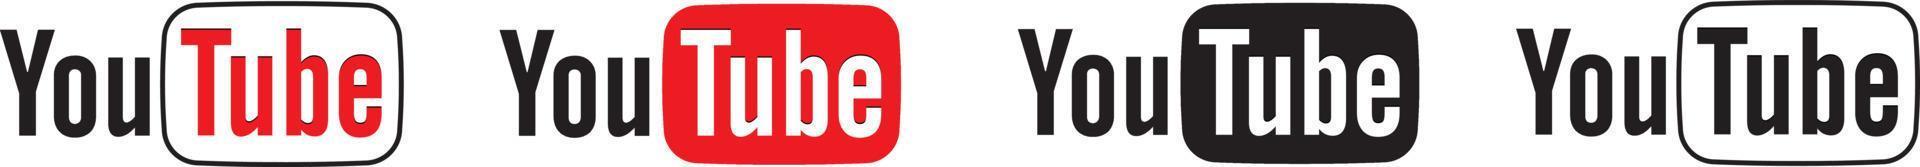 logo youtube impostato in forma diversa su sfondo bianco vettore